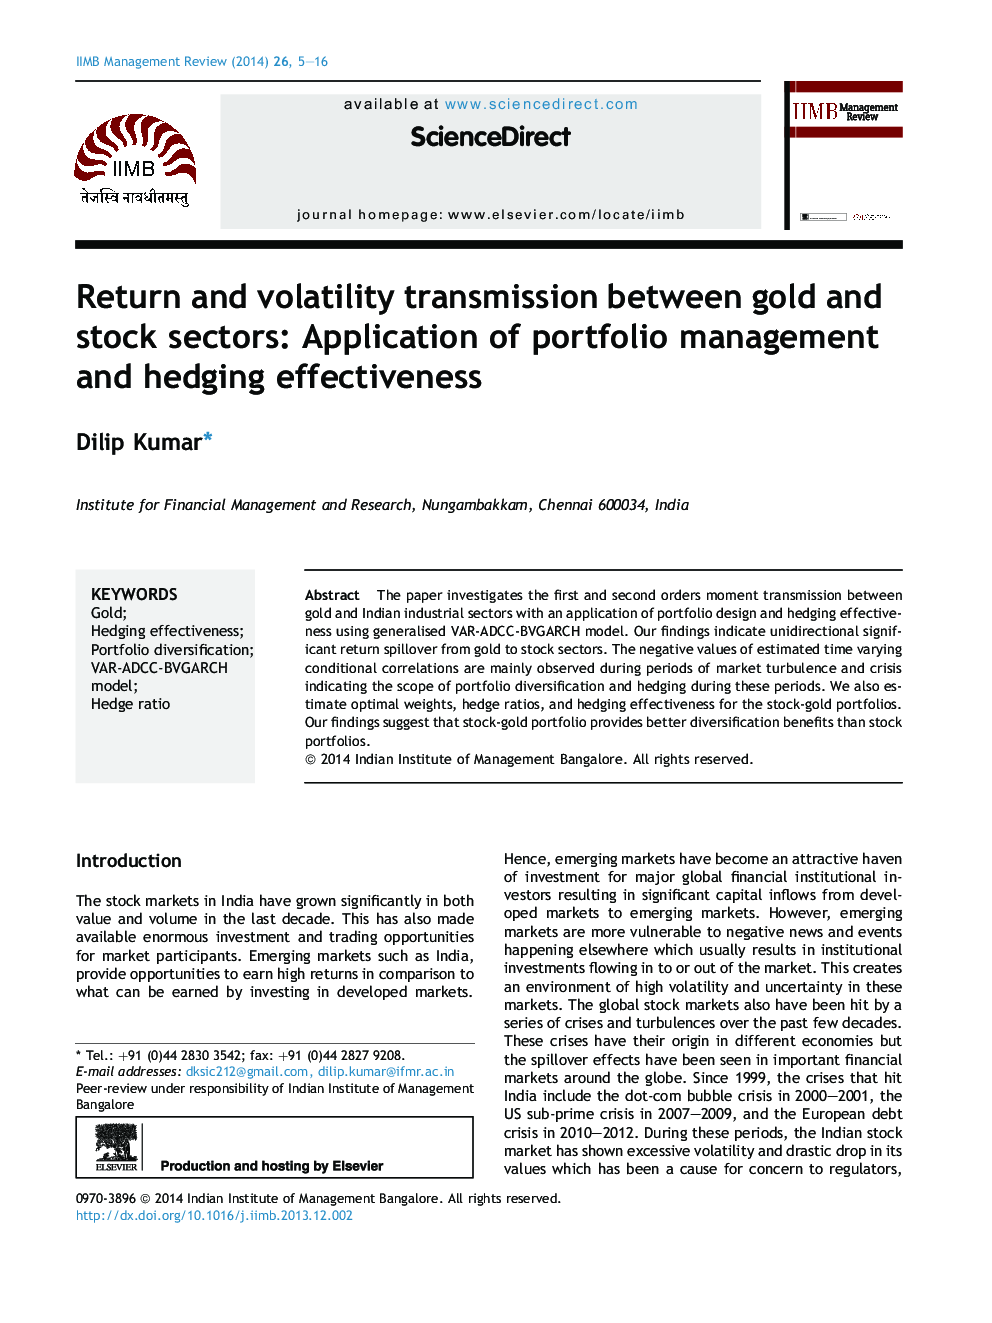 سود بازگشتی و انتقال عدم ثبات بین طلا و بخش های سهام : کاربرد مدیریت سود و تاثیر عدم ثبات